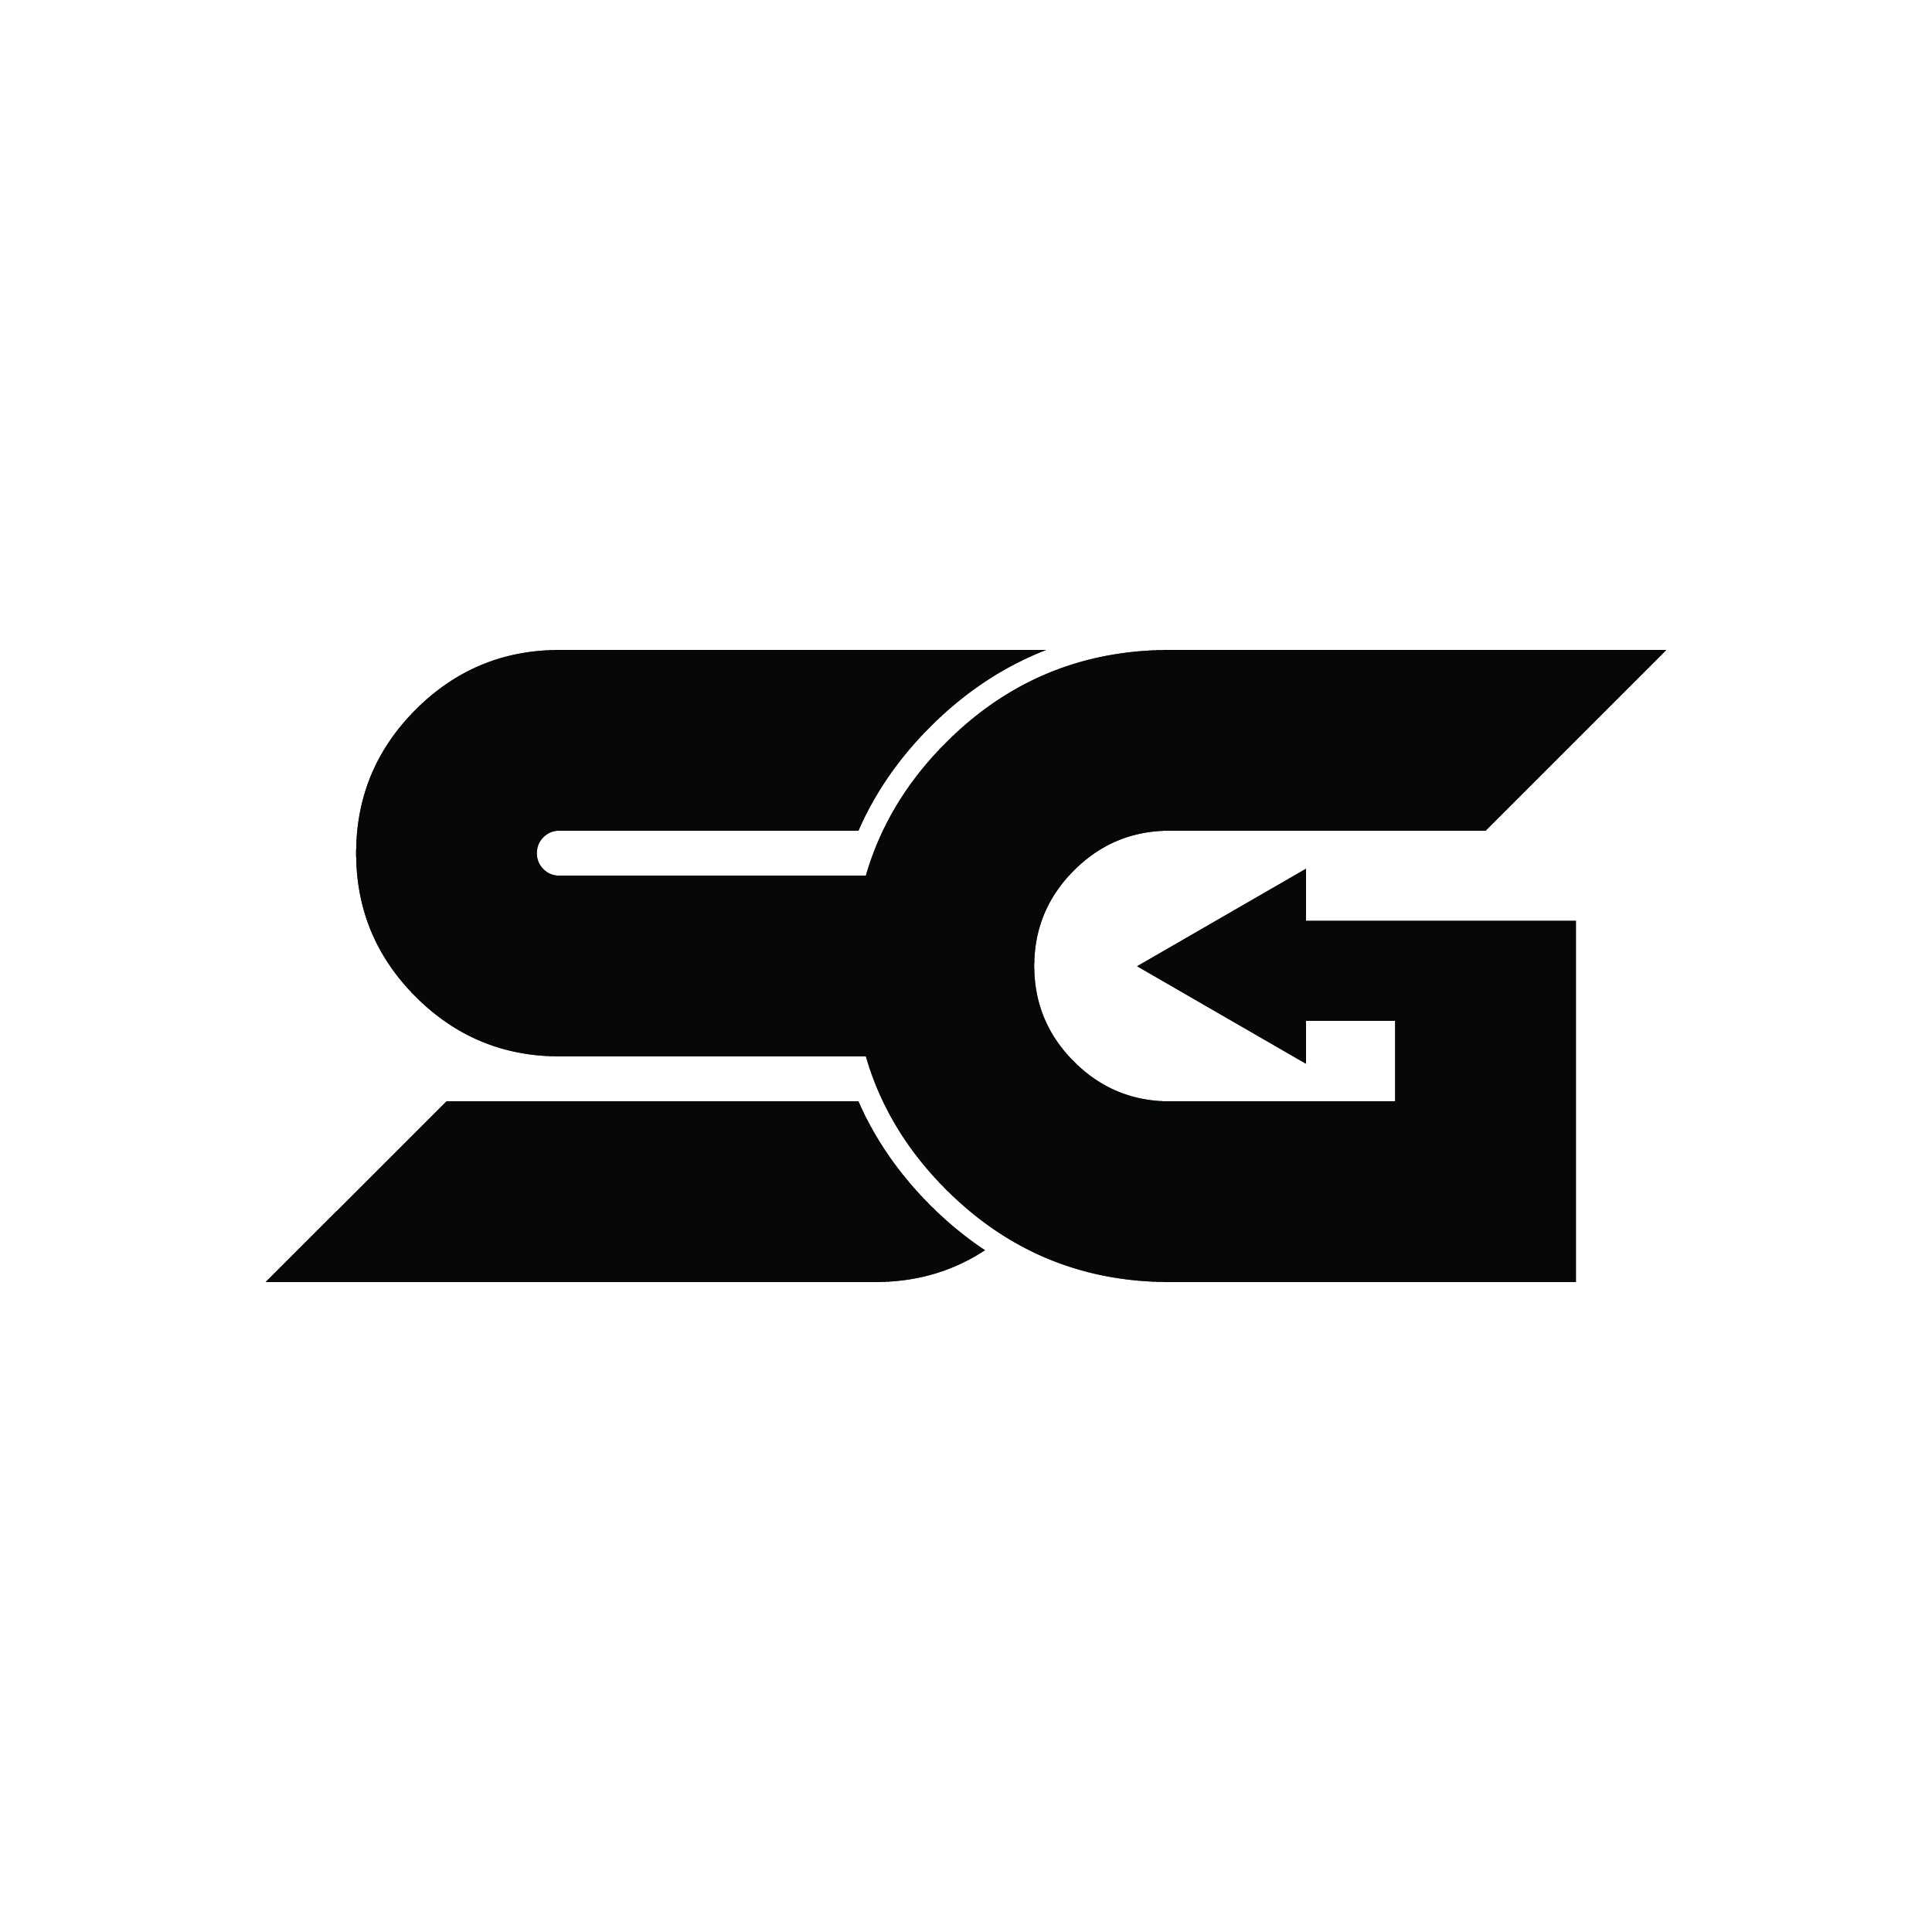 sg logo 600